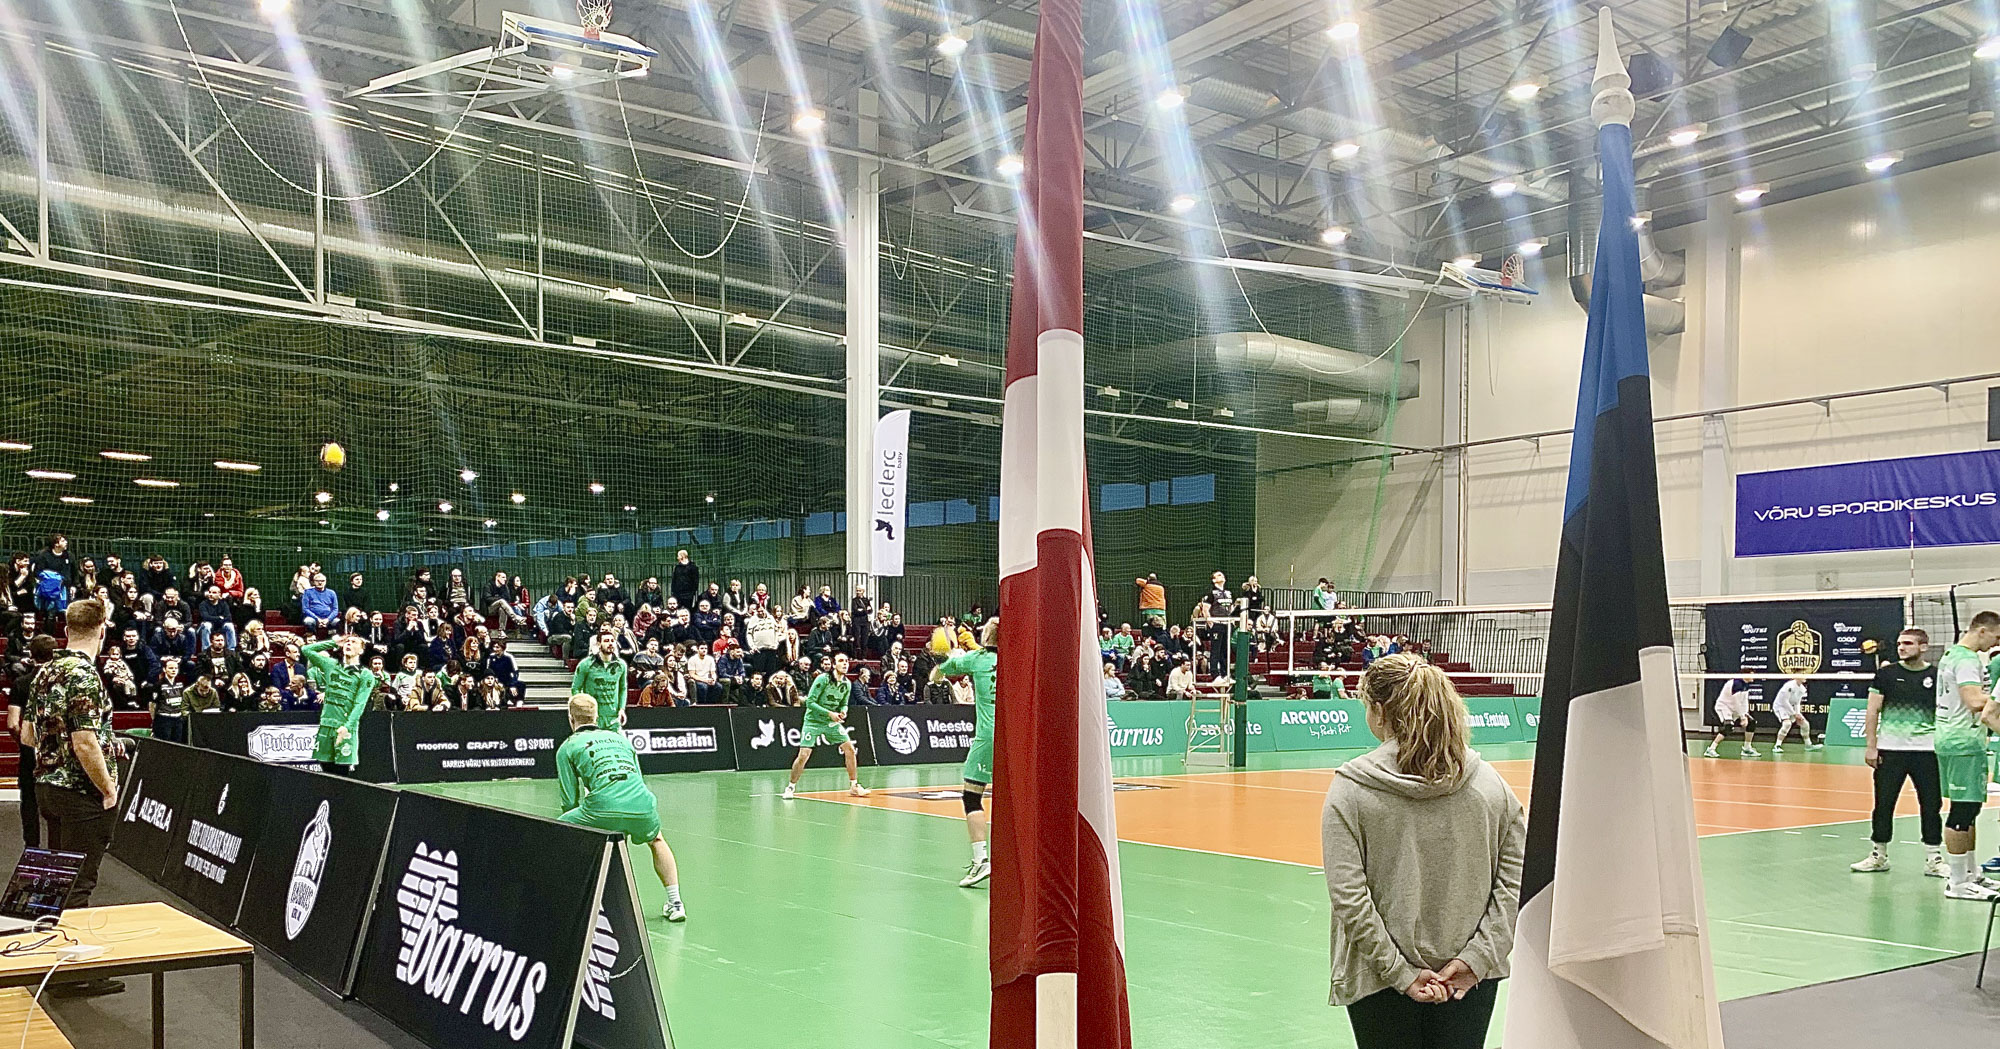 Nädalavahetusel oli spordikeskuses rahvusvaheline võrkpallipäev, mis tõi täistribüünid. Matšpalli ajal tõusti püsti. Eesti lipu kõrval oli Läti lipp.